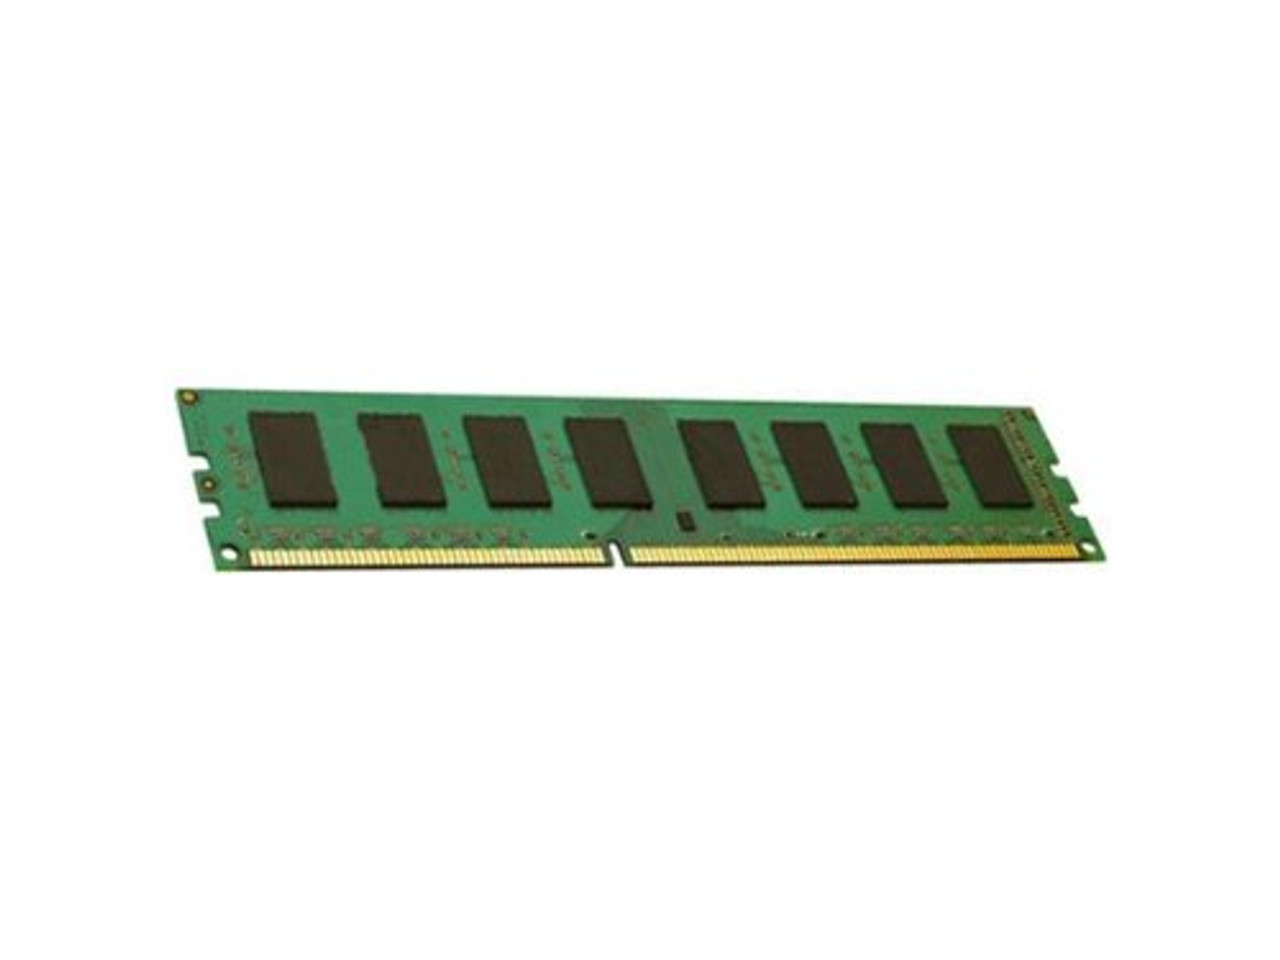 ENET 64GB DDR4 SDRAM Memory Module - P020504-001-ENC